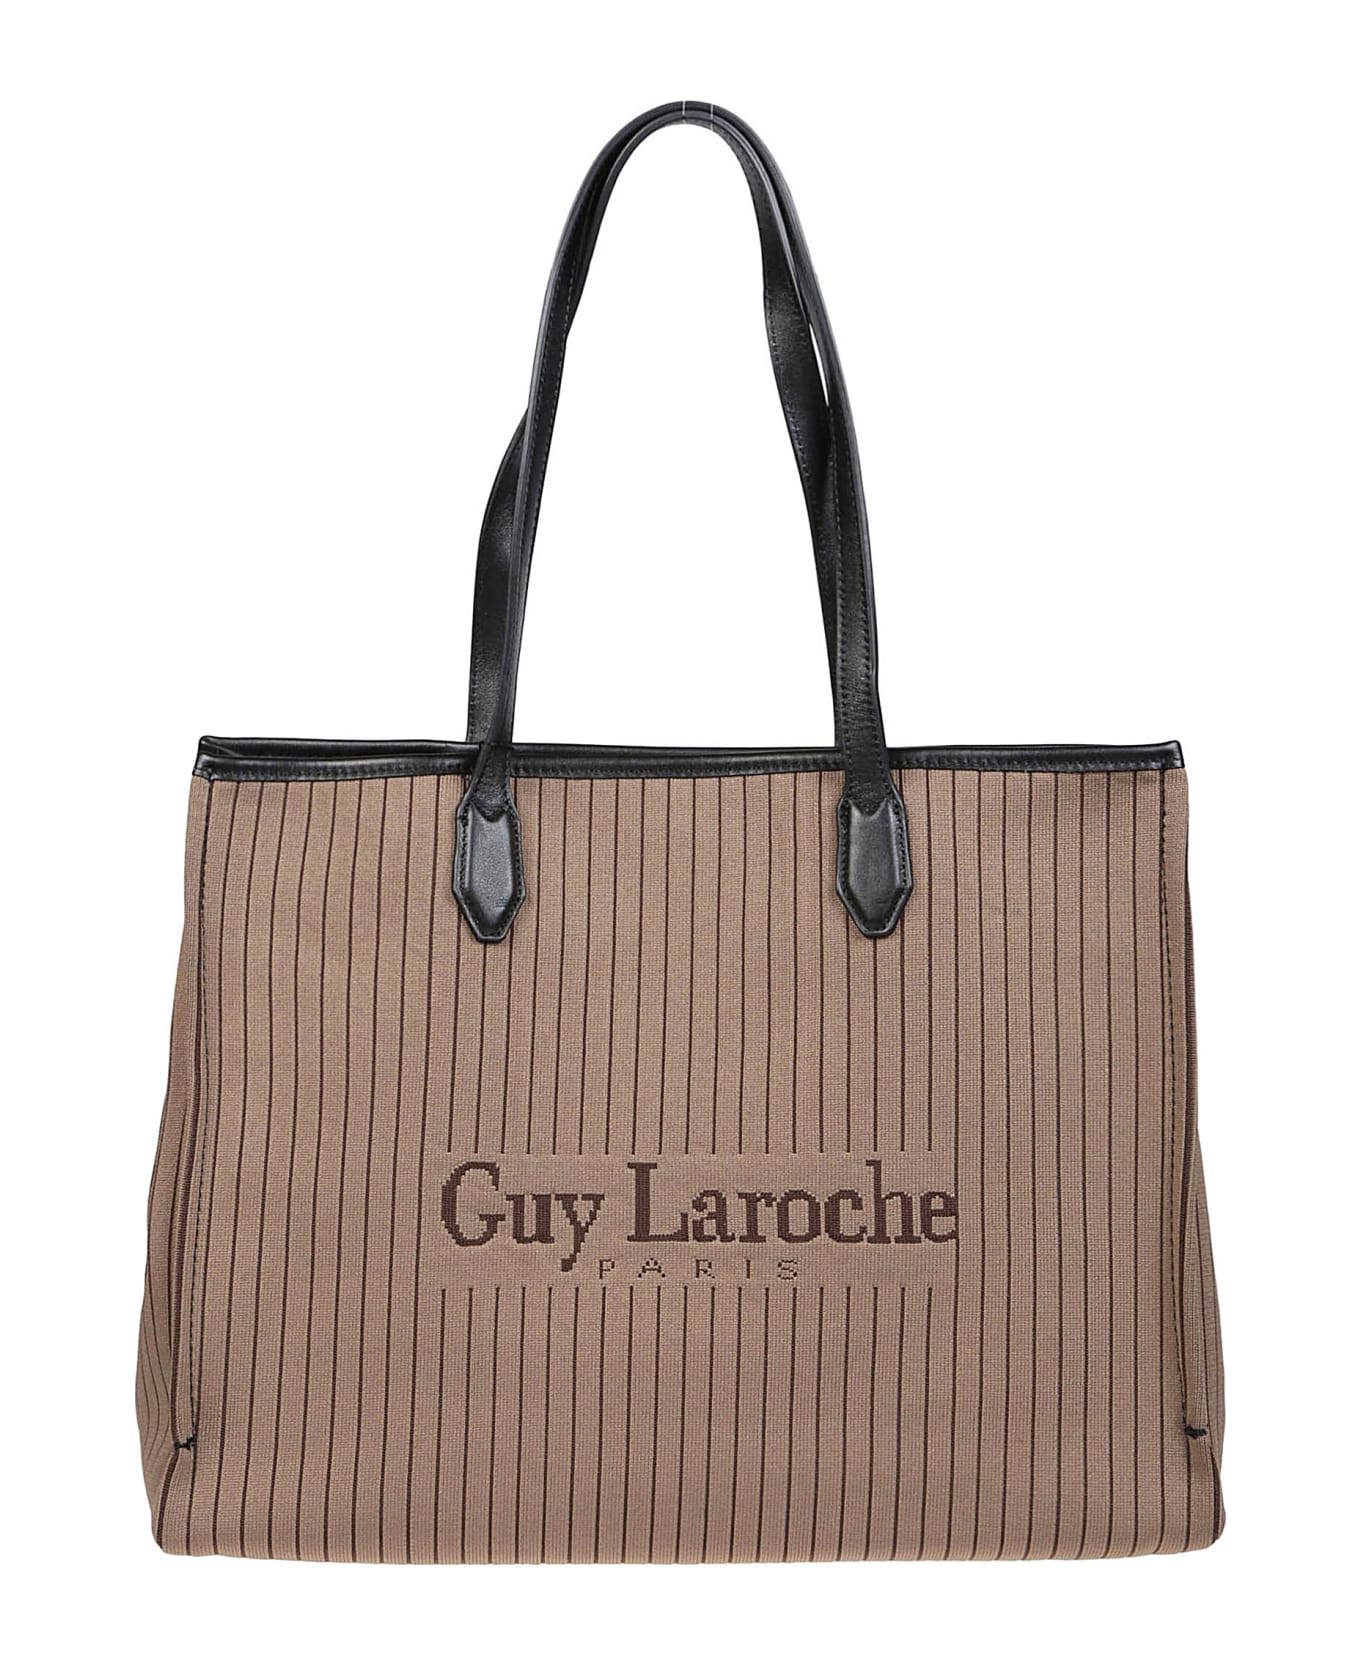 Guy Laroche Small Tote Bag - Brown